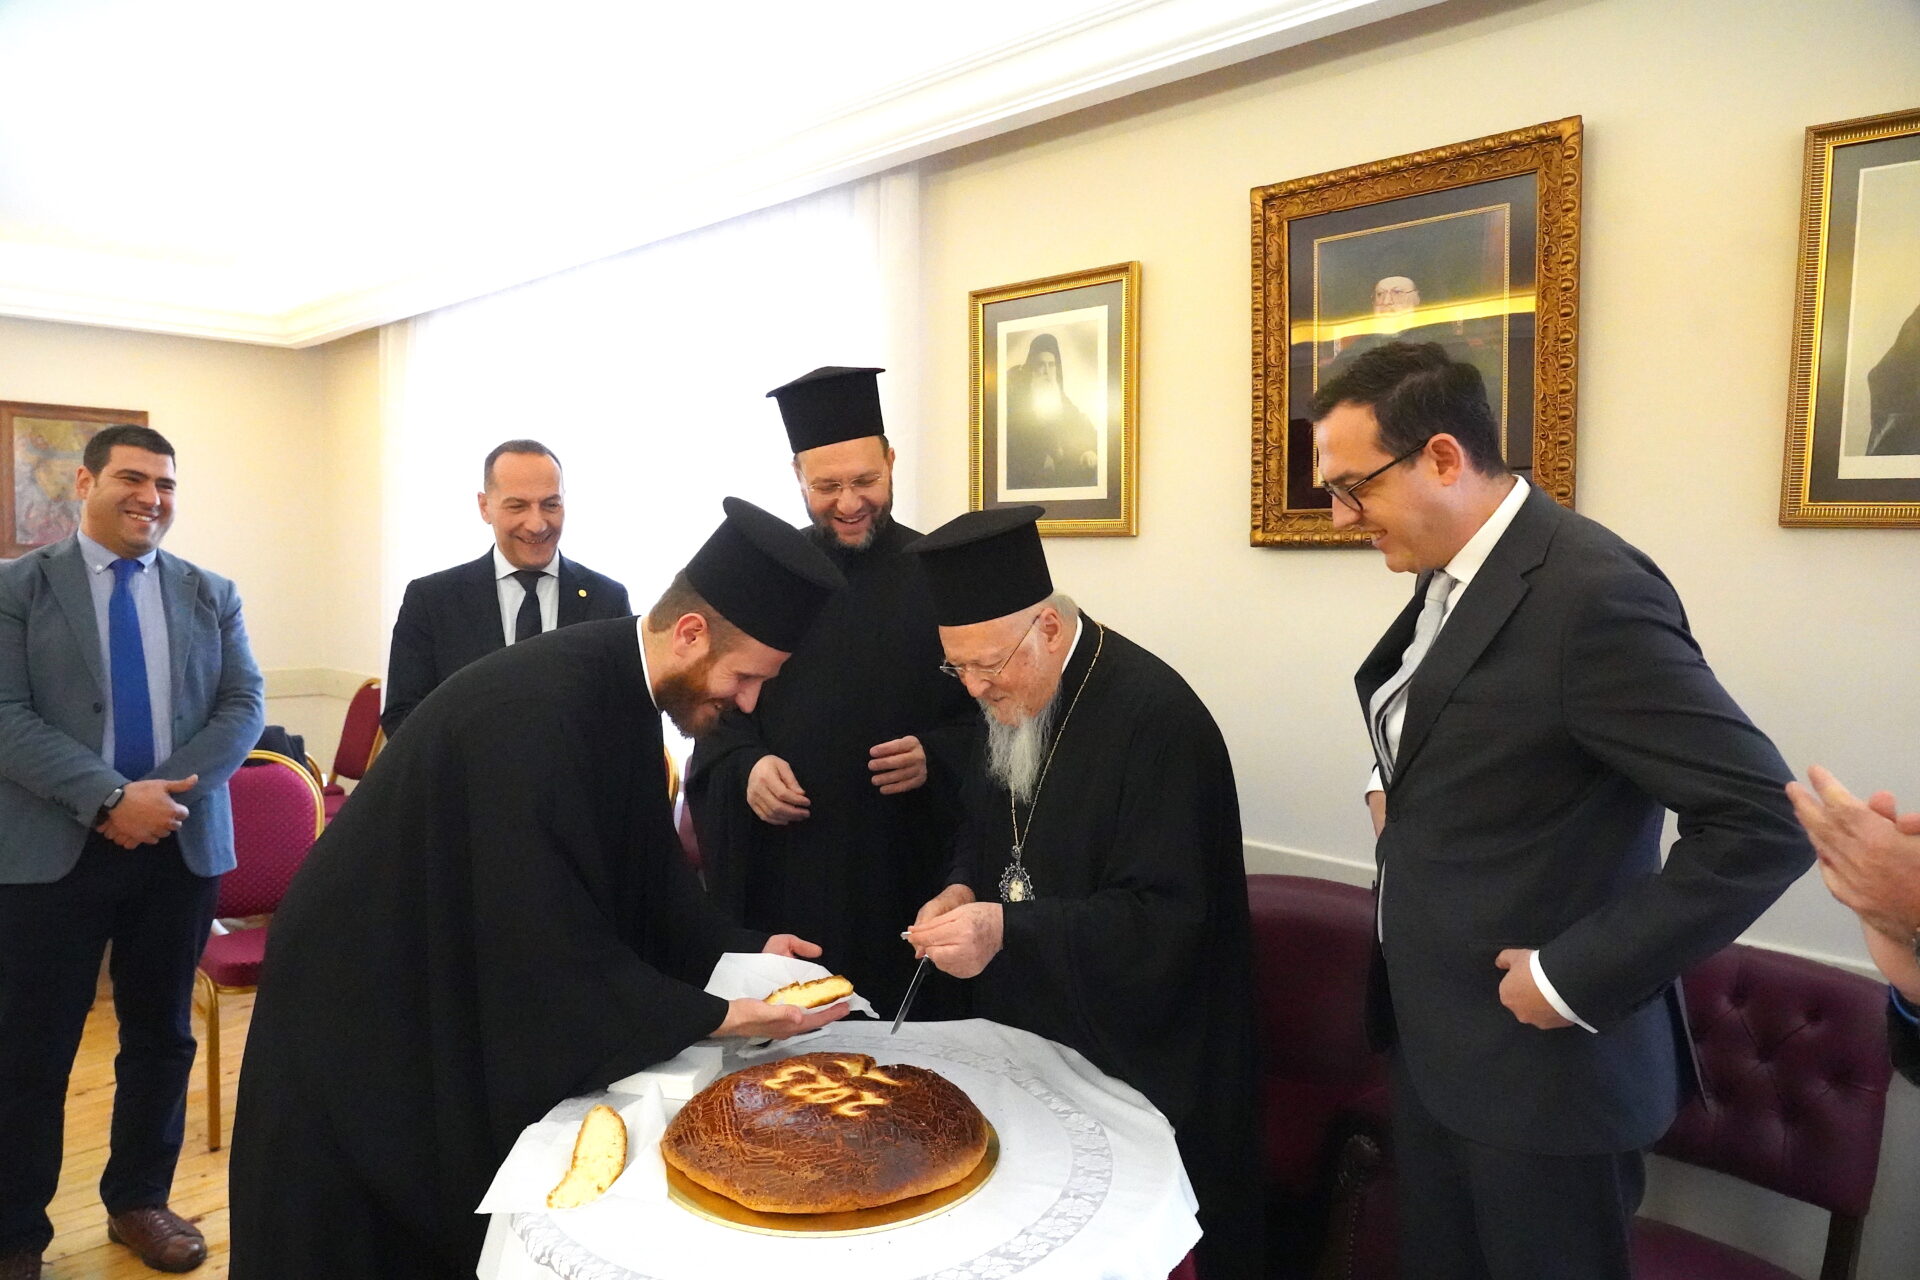 Εγκάρδιες ευχές του Οικουμενικού Πατριάρχη στον Μητροπολίτη Καλλιουπόλεως και Μαδύτου Στέφανο